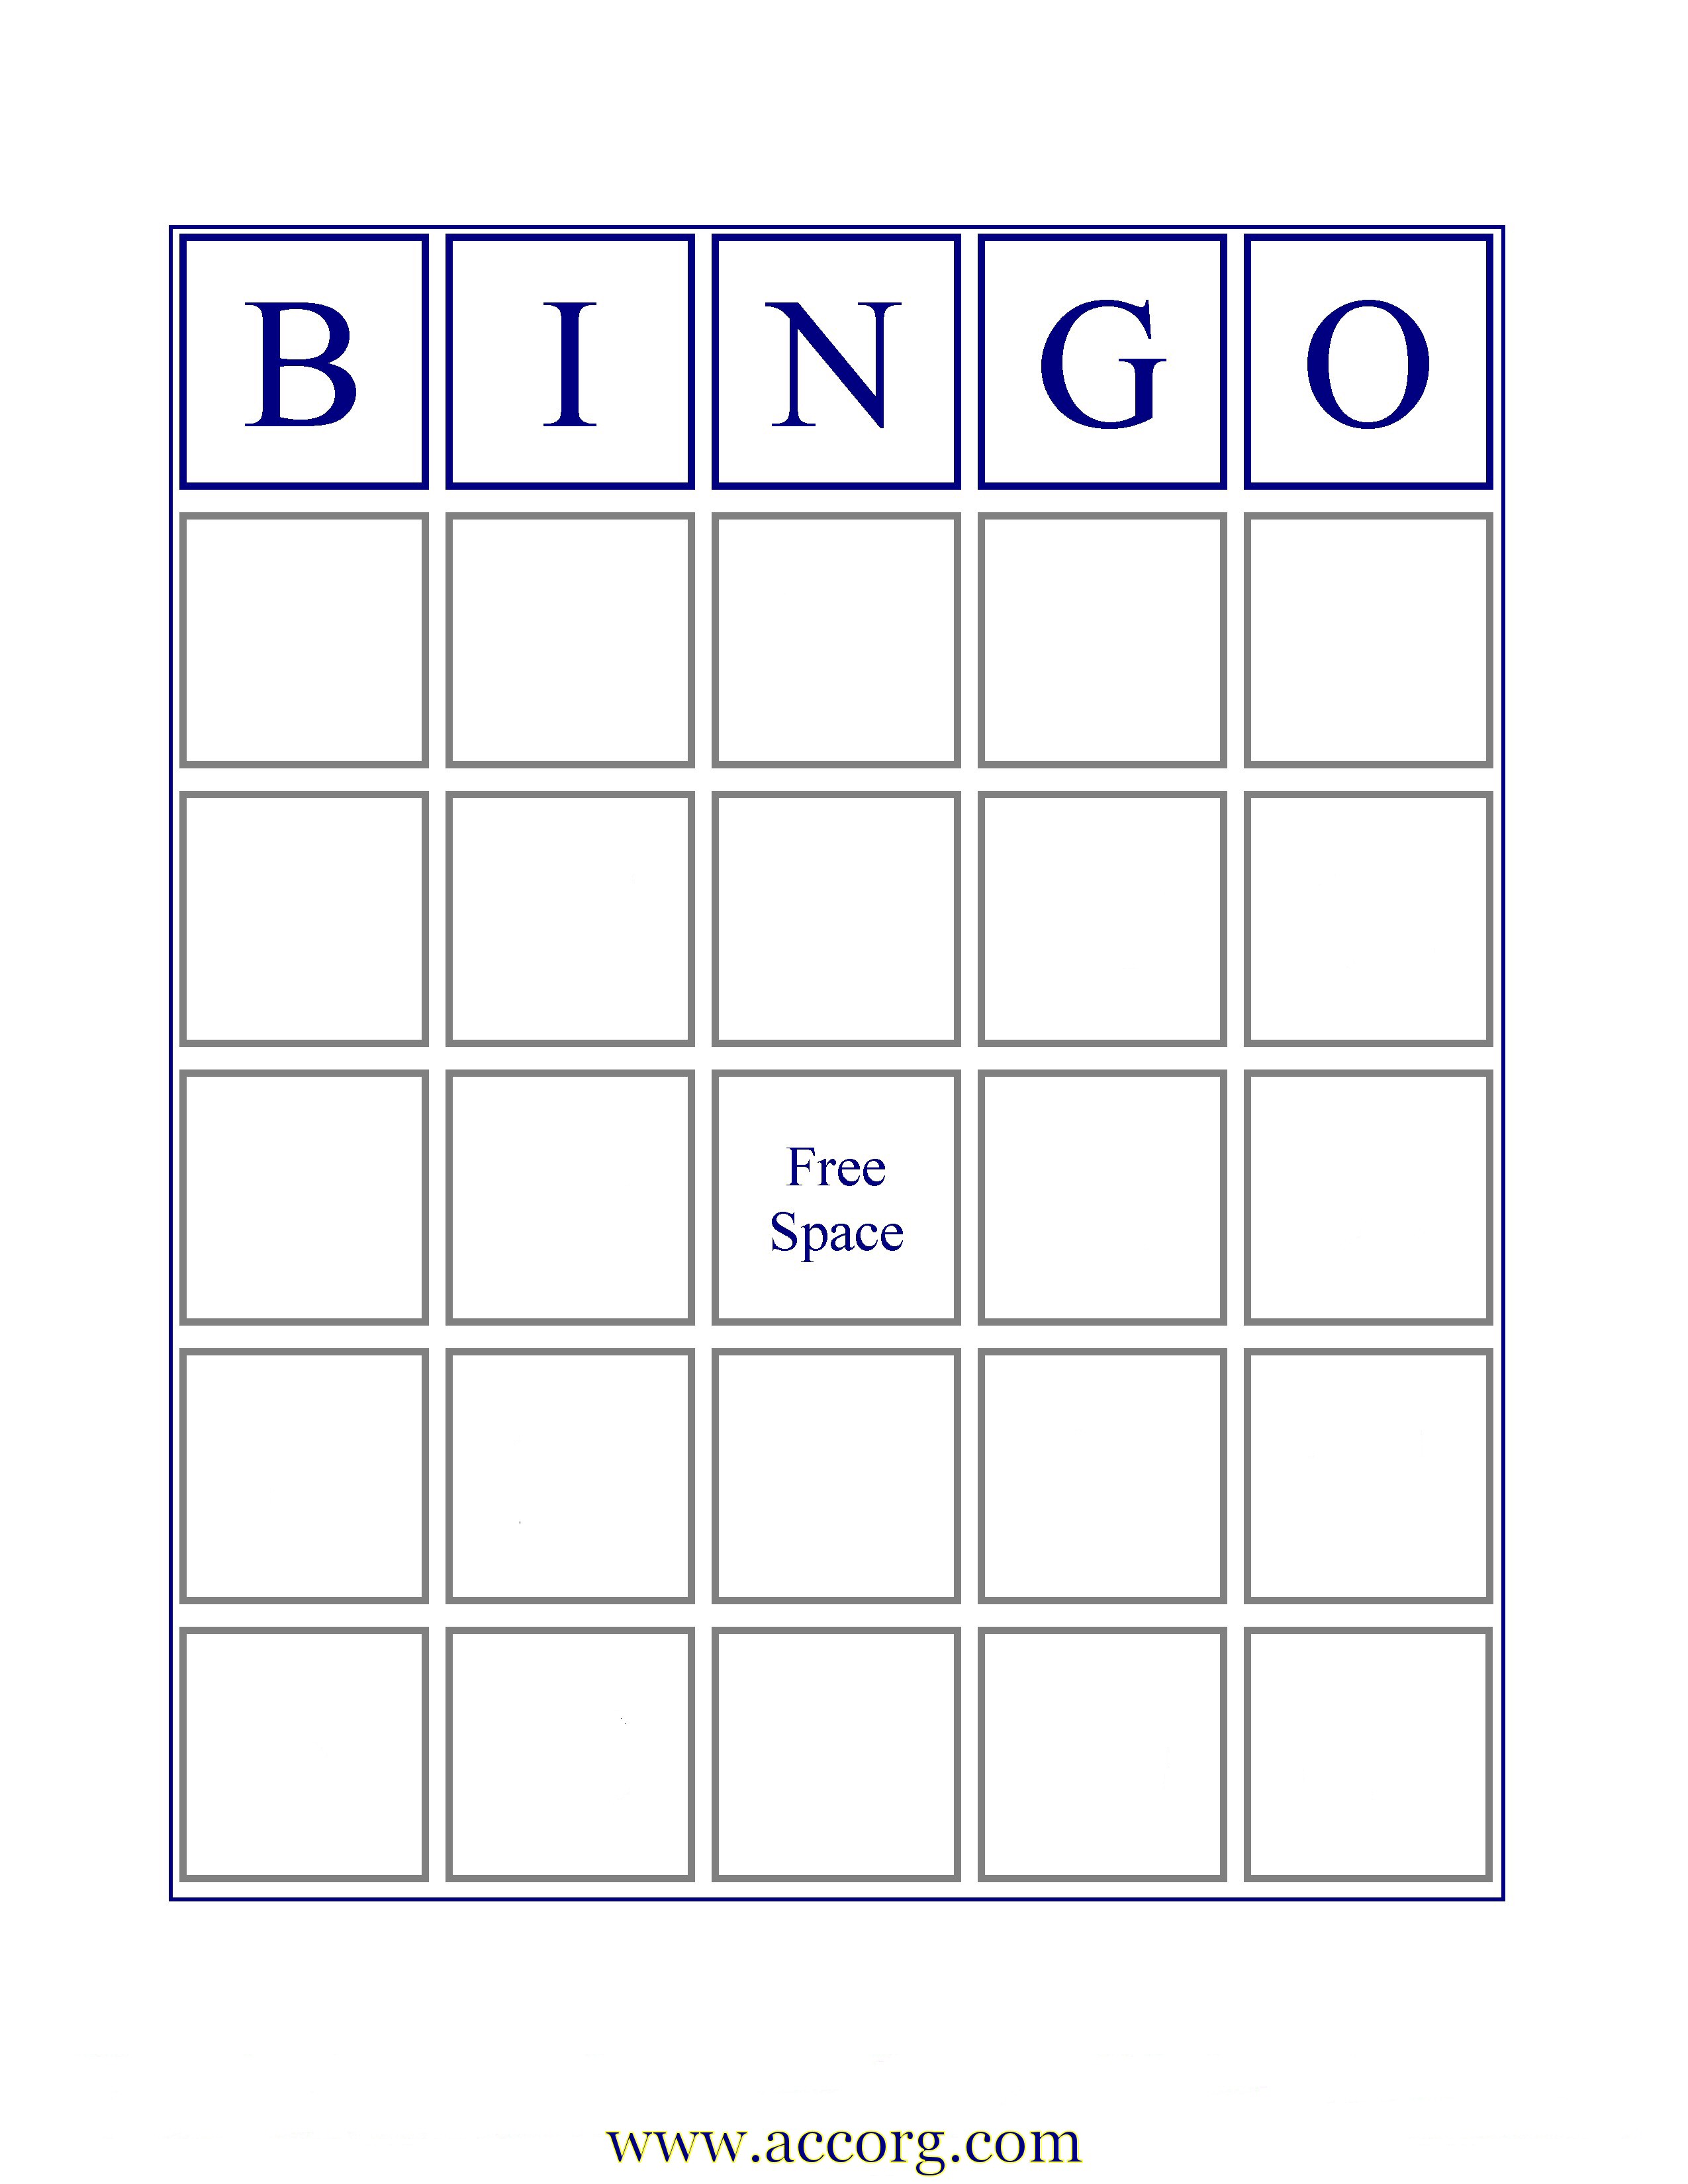 7 Best Images of Printable Blank Bingo Sheets - Free Printable Blank ...